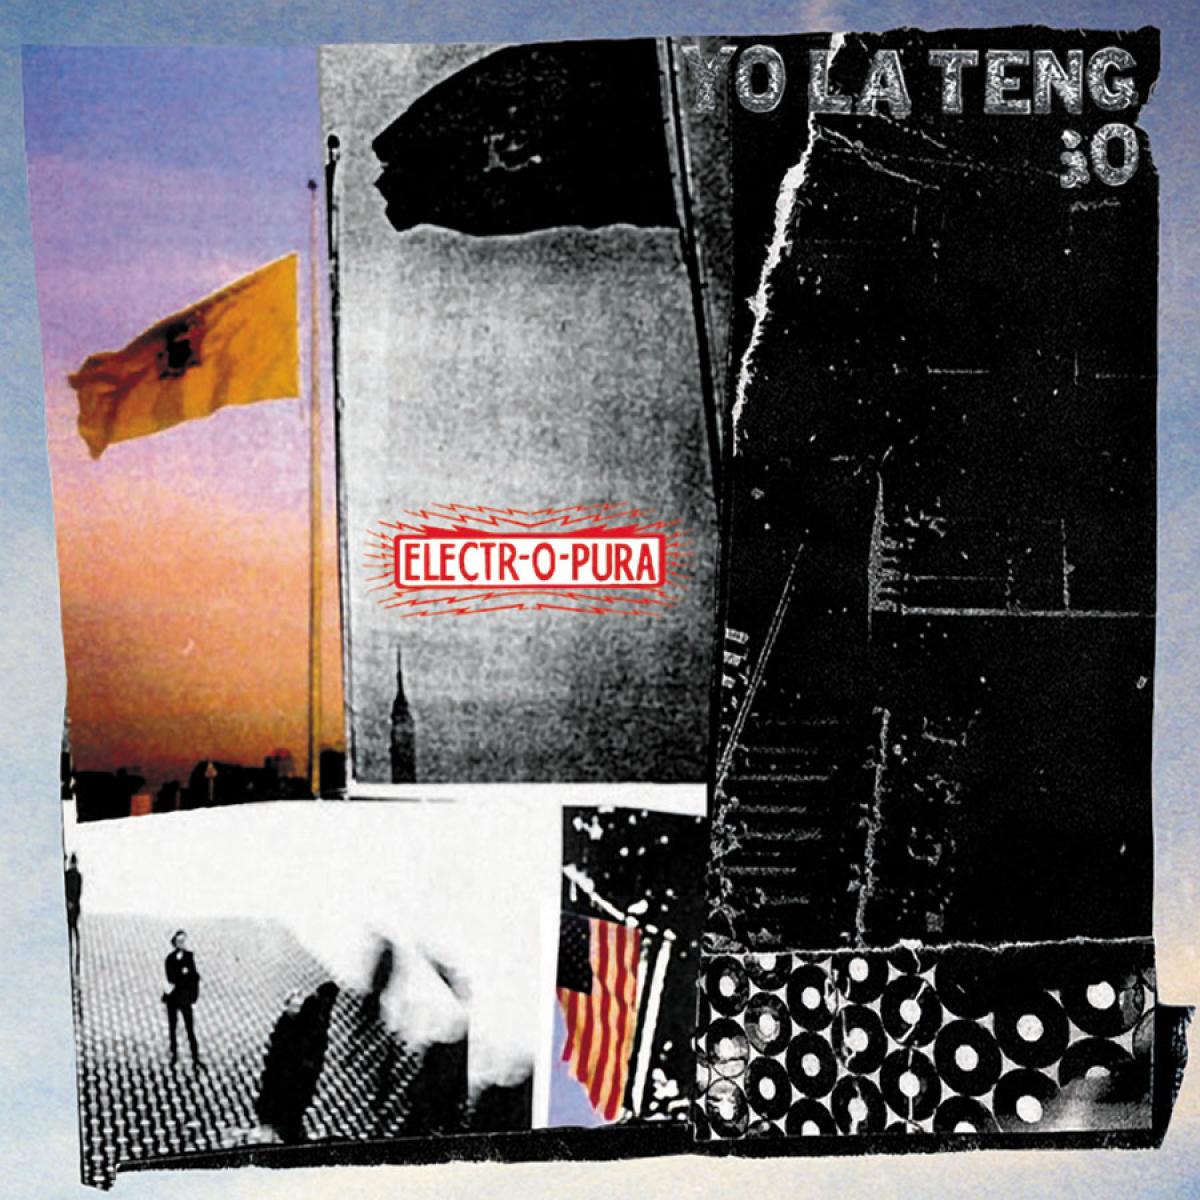 Yo La Tengo | Electr-o-pura | Vinyl